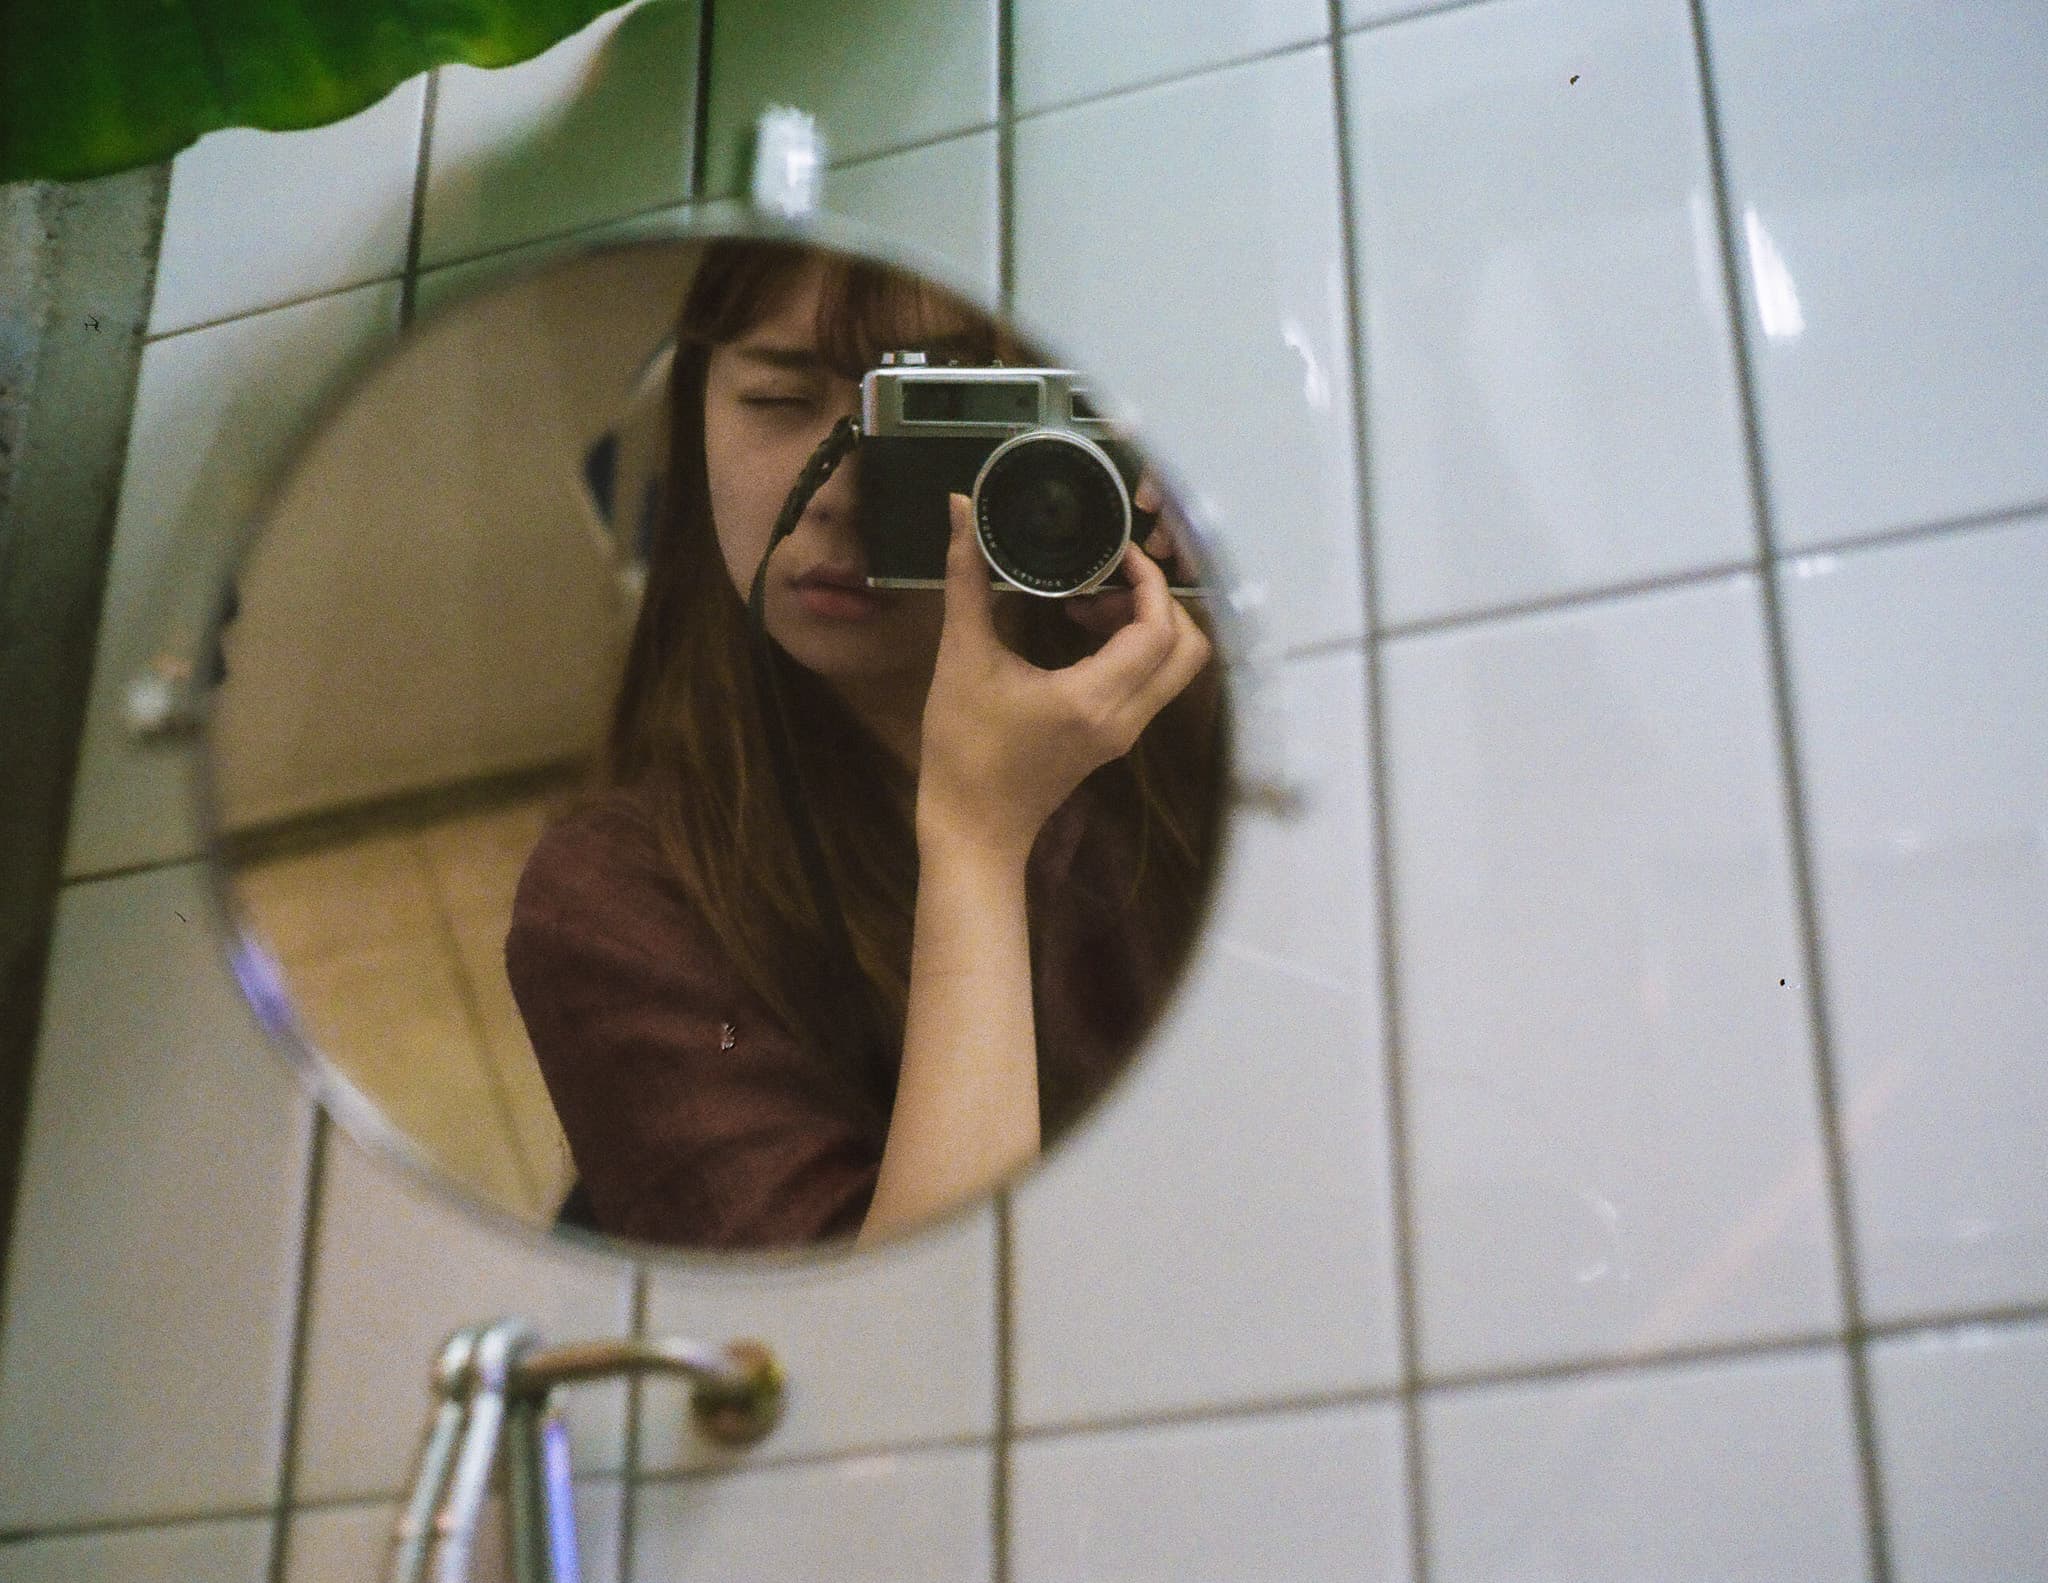 거울에 비친 나를 카메라 뷰파인더로 보고 있는 나의 얼굴 반쪽을 찍는 내가 담긴 사진